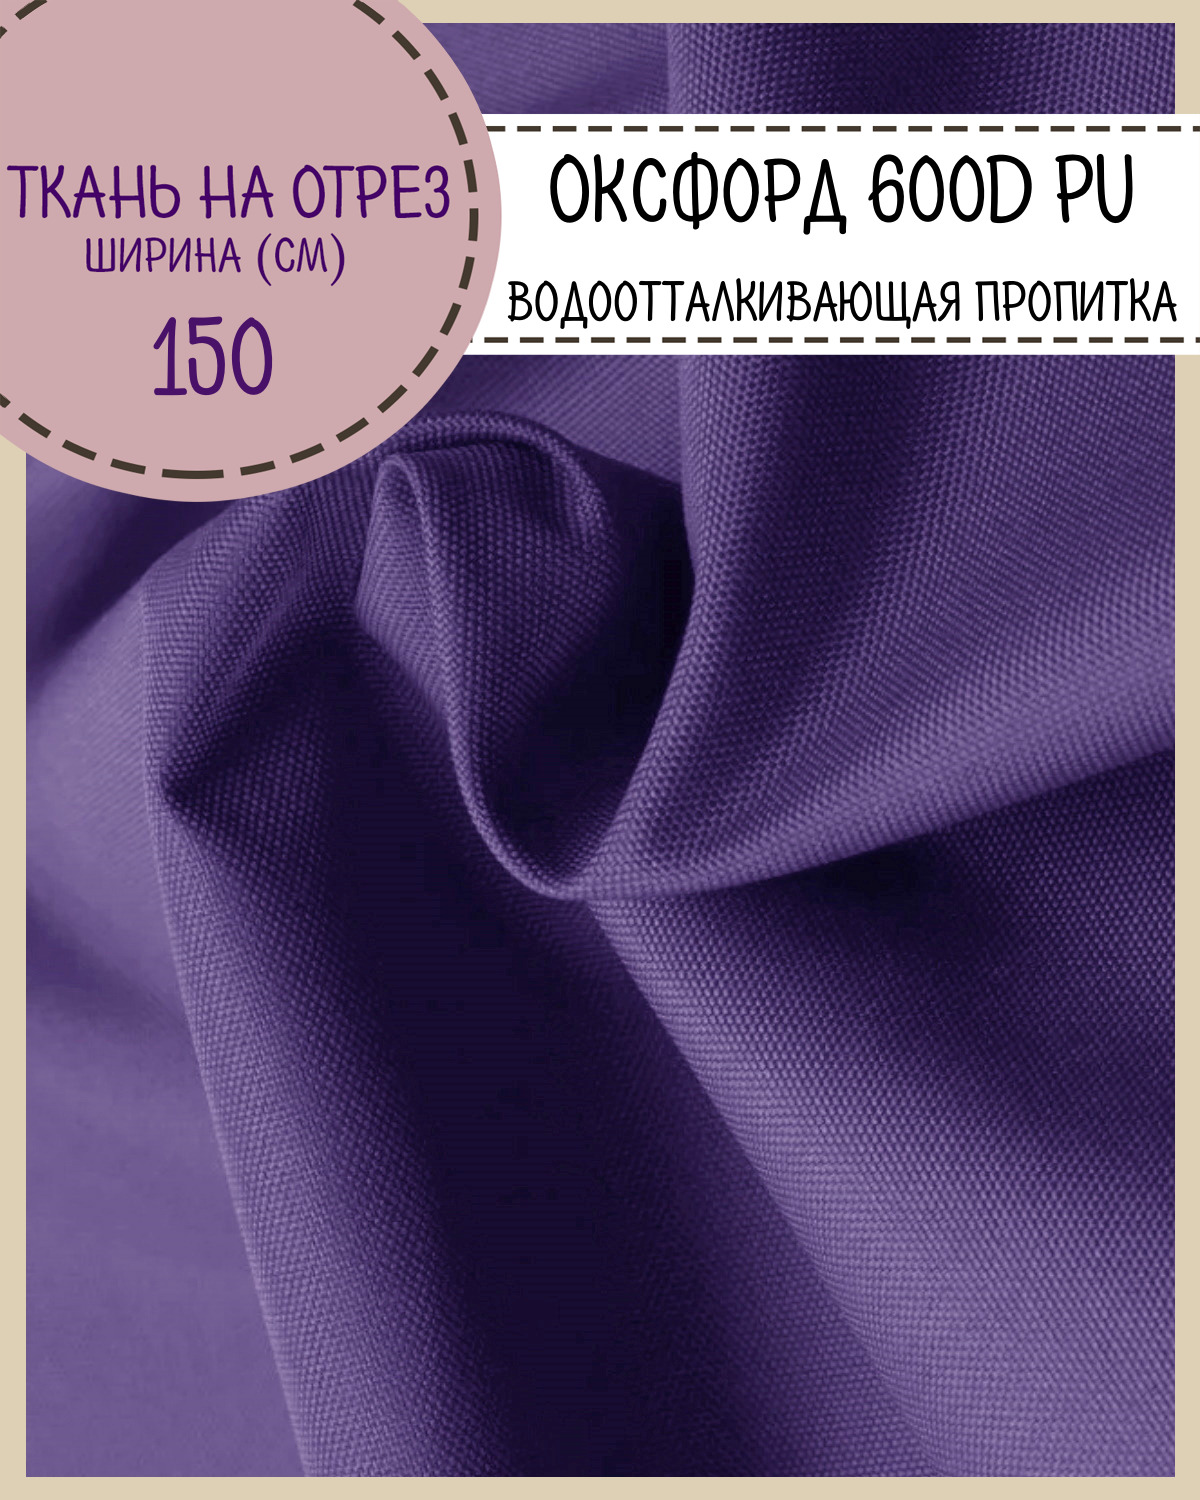 Ткань Оксфорд Любодом 600D PU водоотталкивающая, цв. ультрафиолет, на отрез, 150*100см